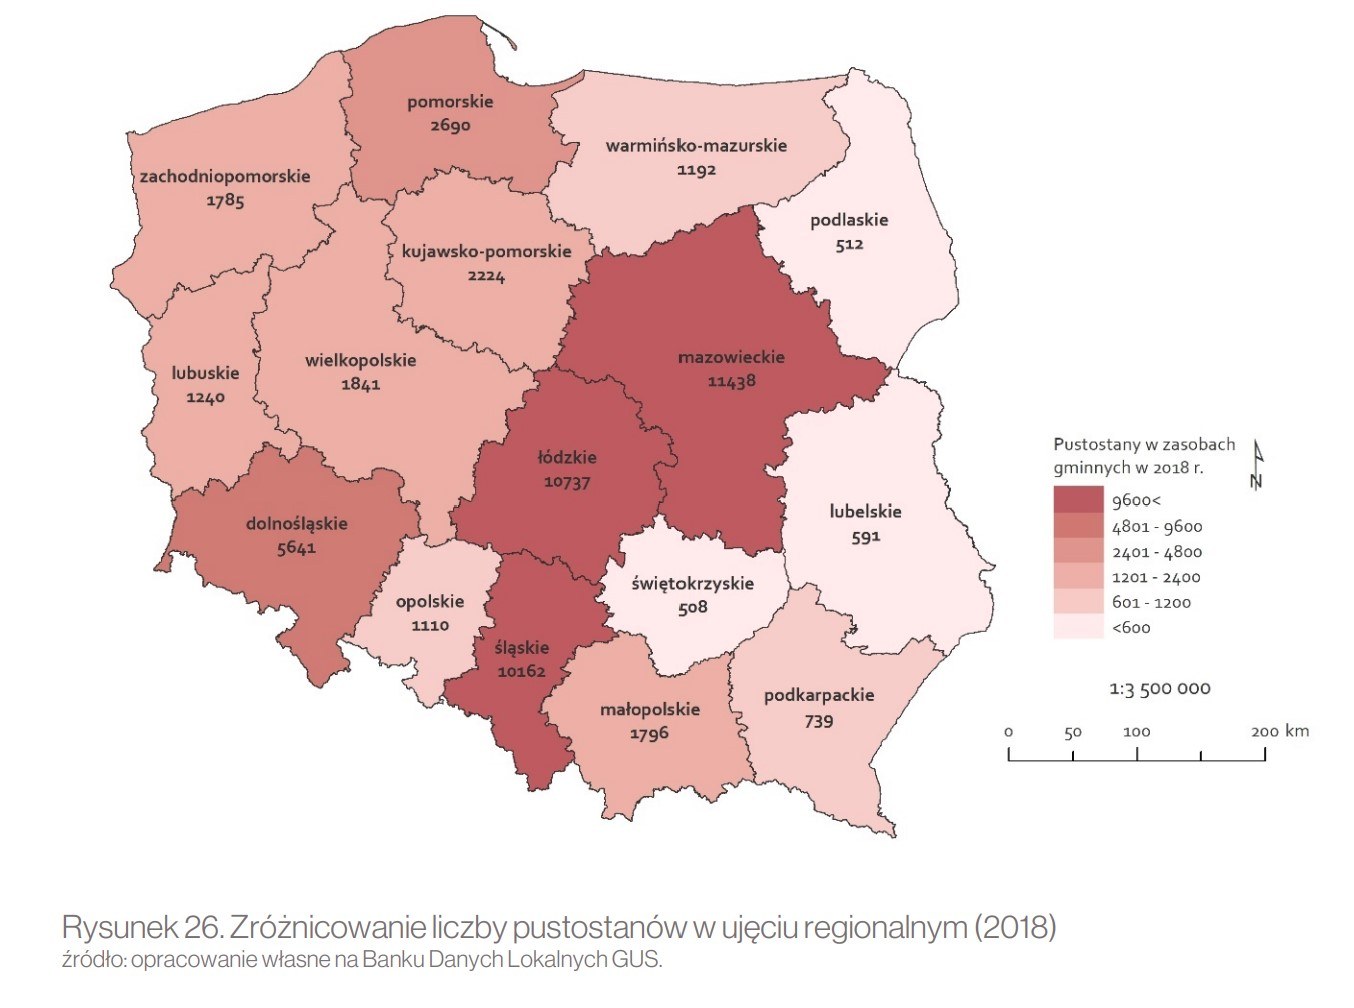 Pustostany w regionach Polski